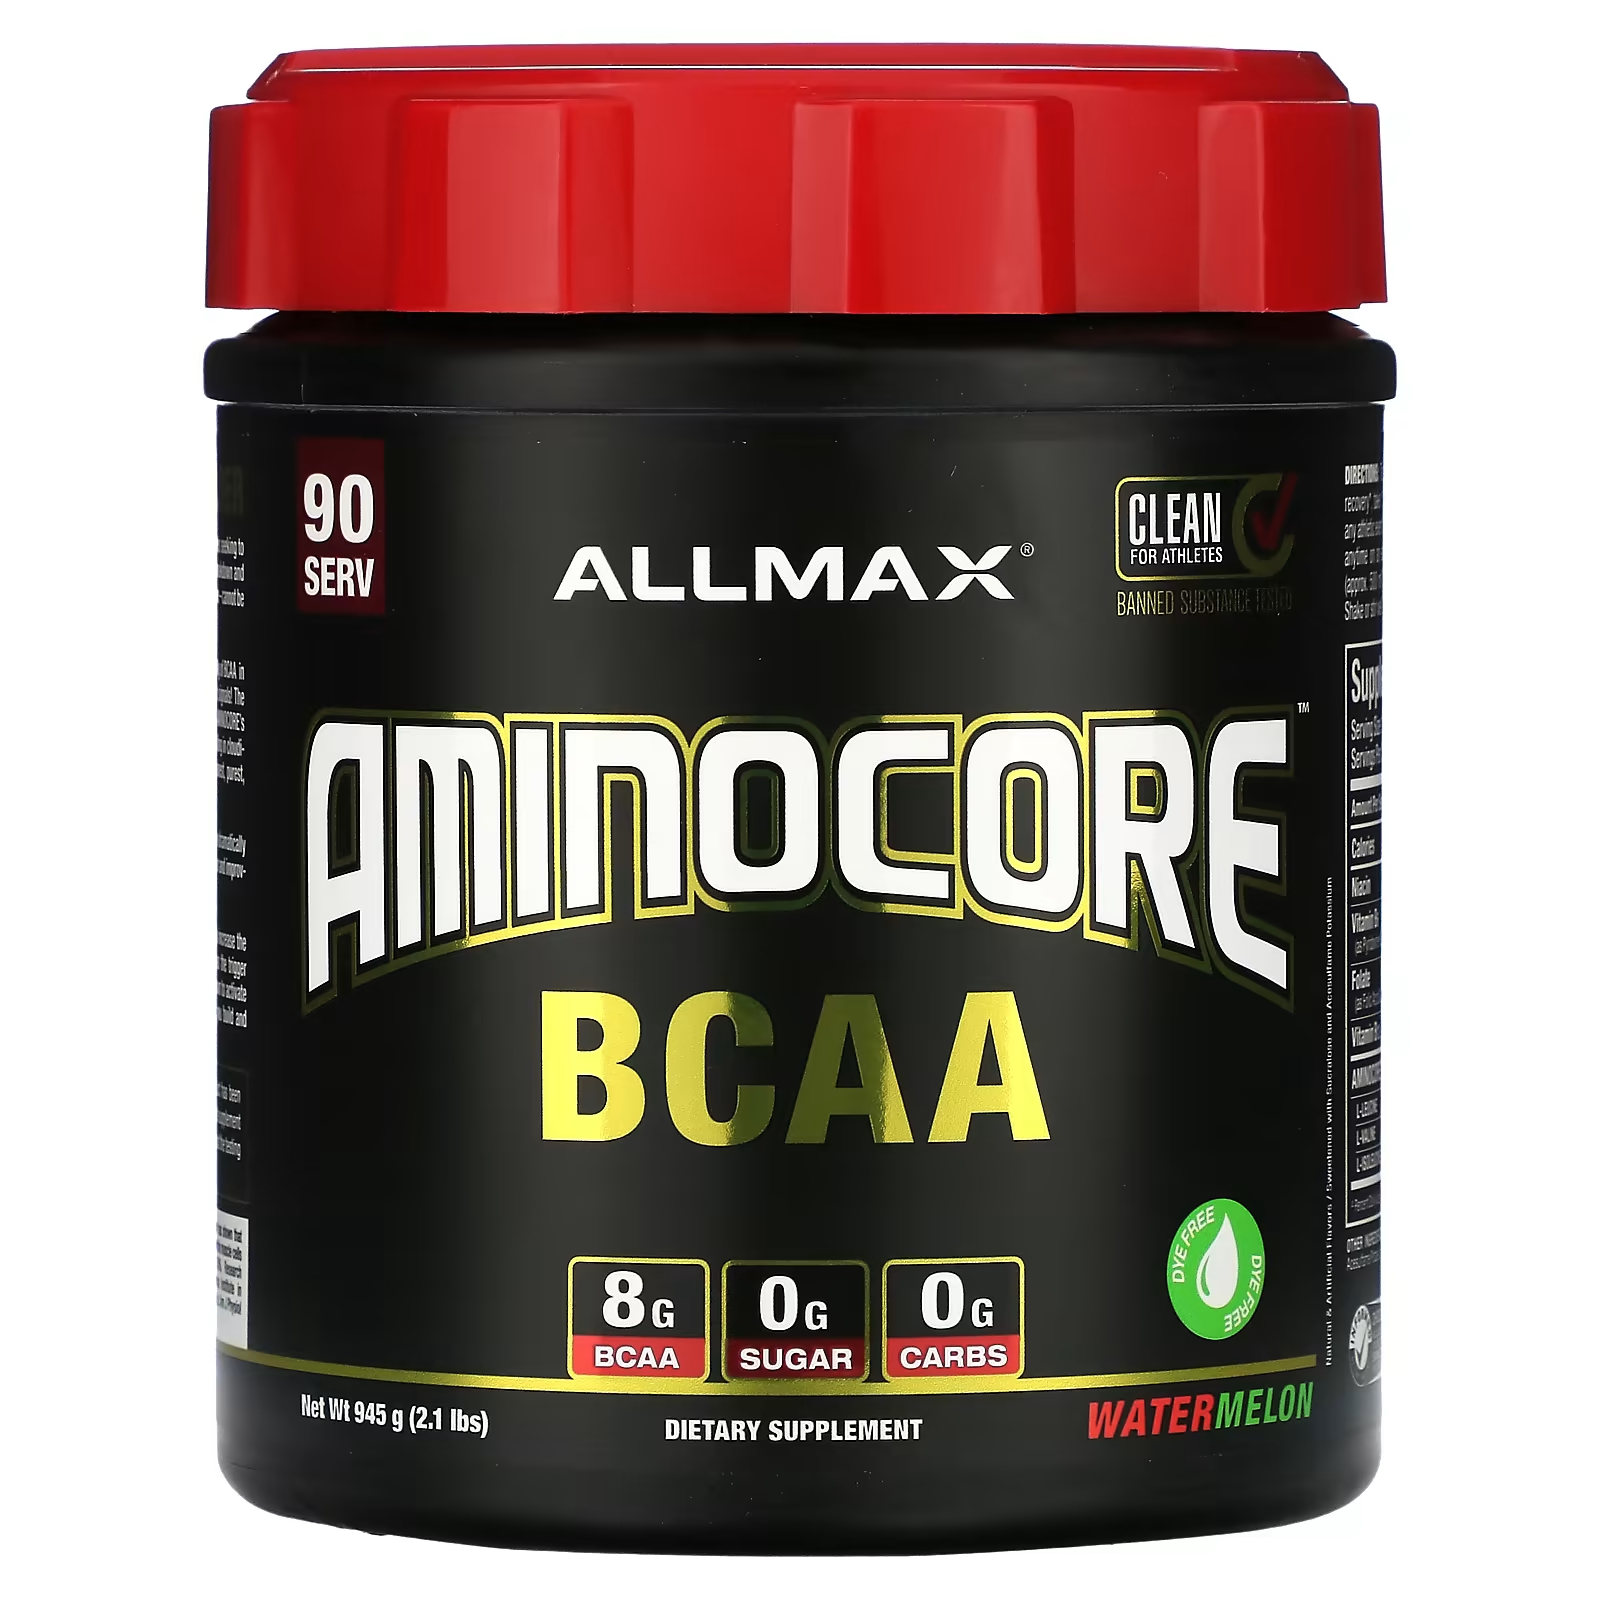 Пищевая добавка ALLMAX AMINOCORE BCAA, арбуз пищевая добавка allmax aminocore bcaa голубая малина